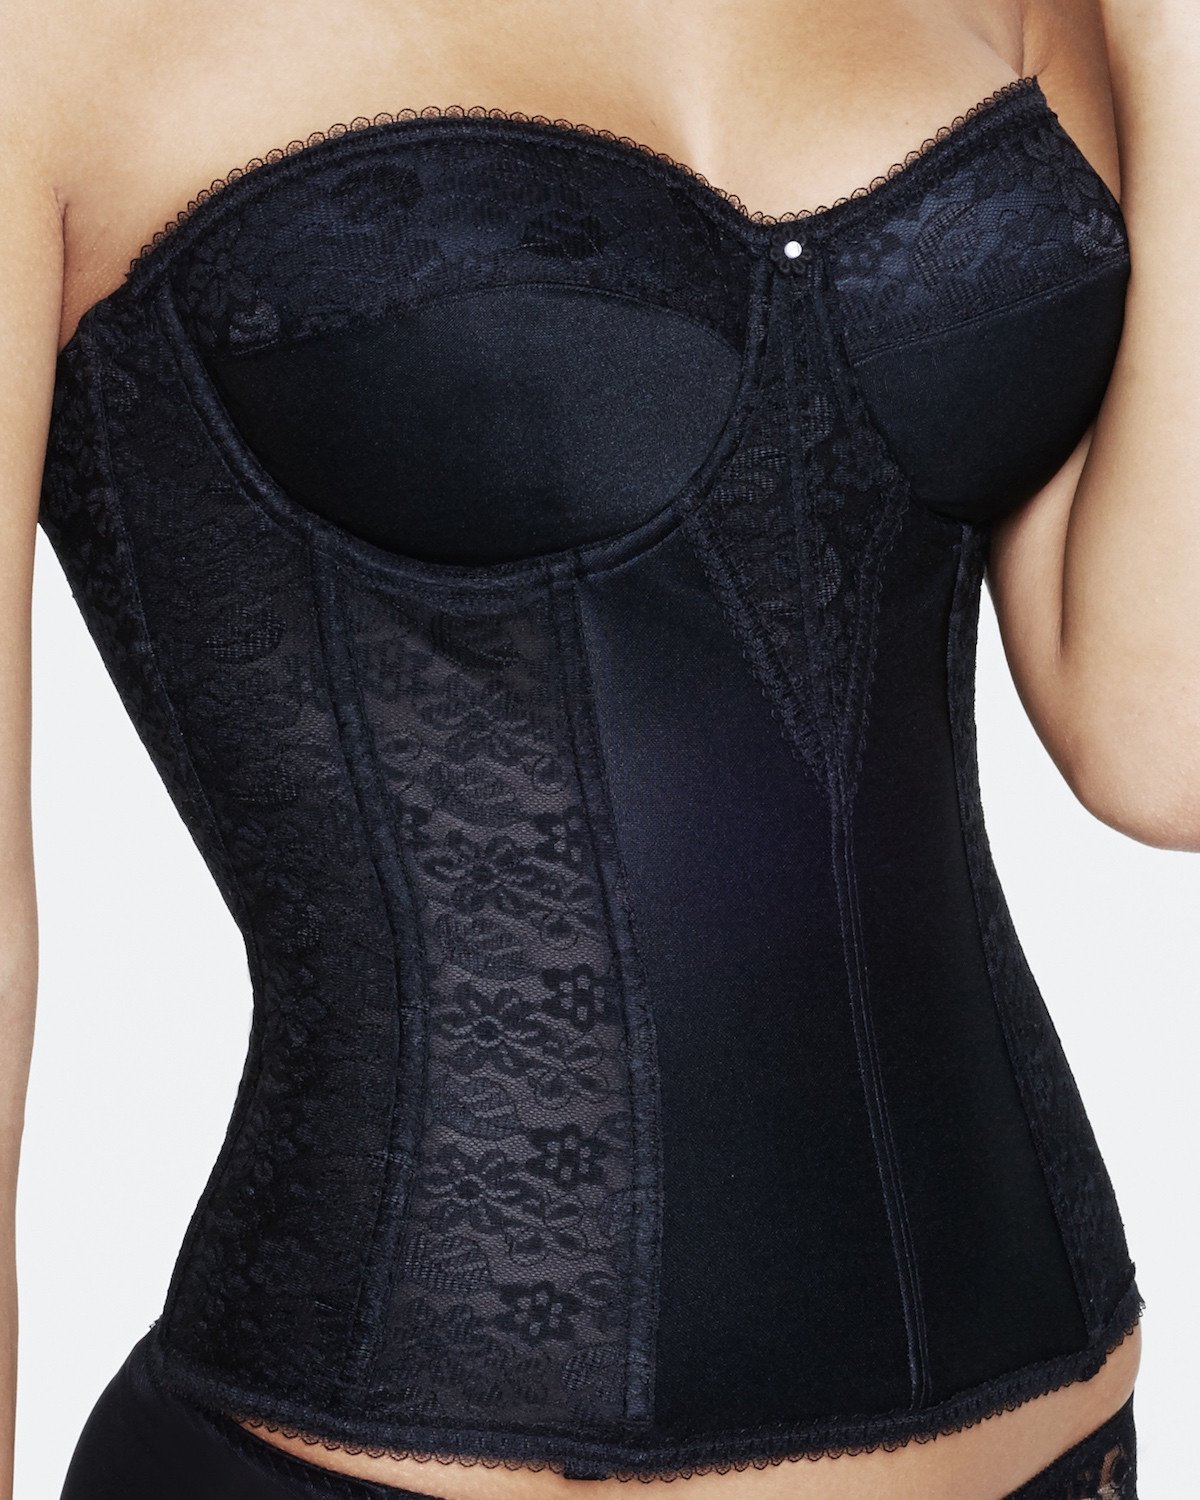 https://hauteflair.com/cdn/shop/products/dominique-bridal-lace-corset-bridal-bra-dominique-colette-torsolette-in-black-4485975877_1200x.jpg?v=1625167130